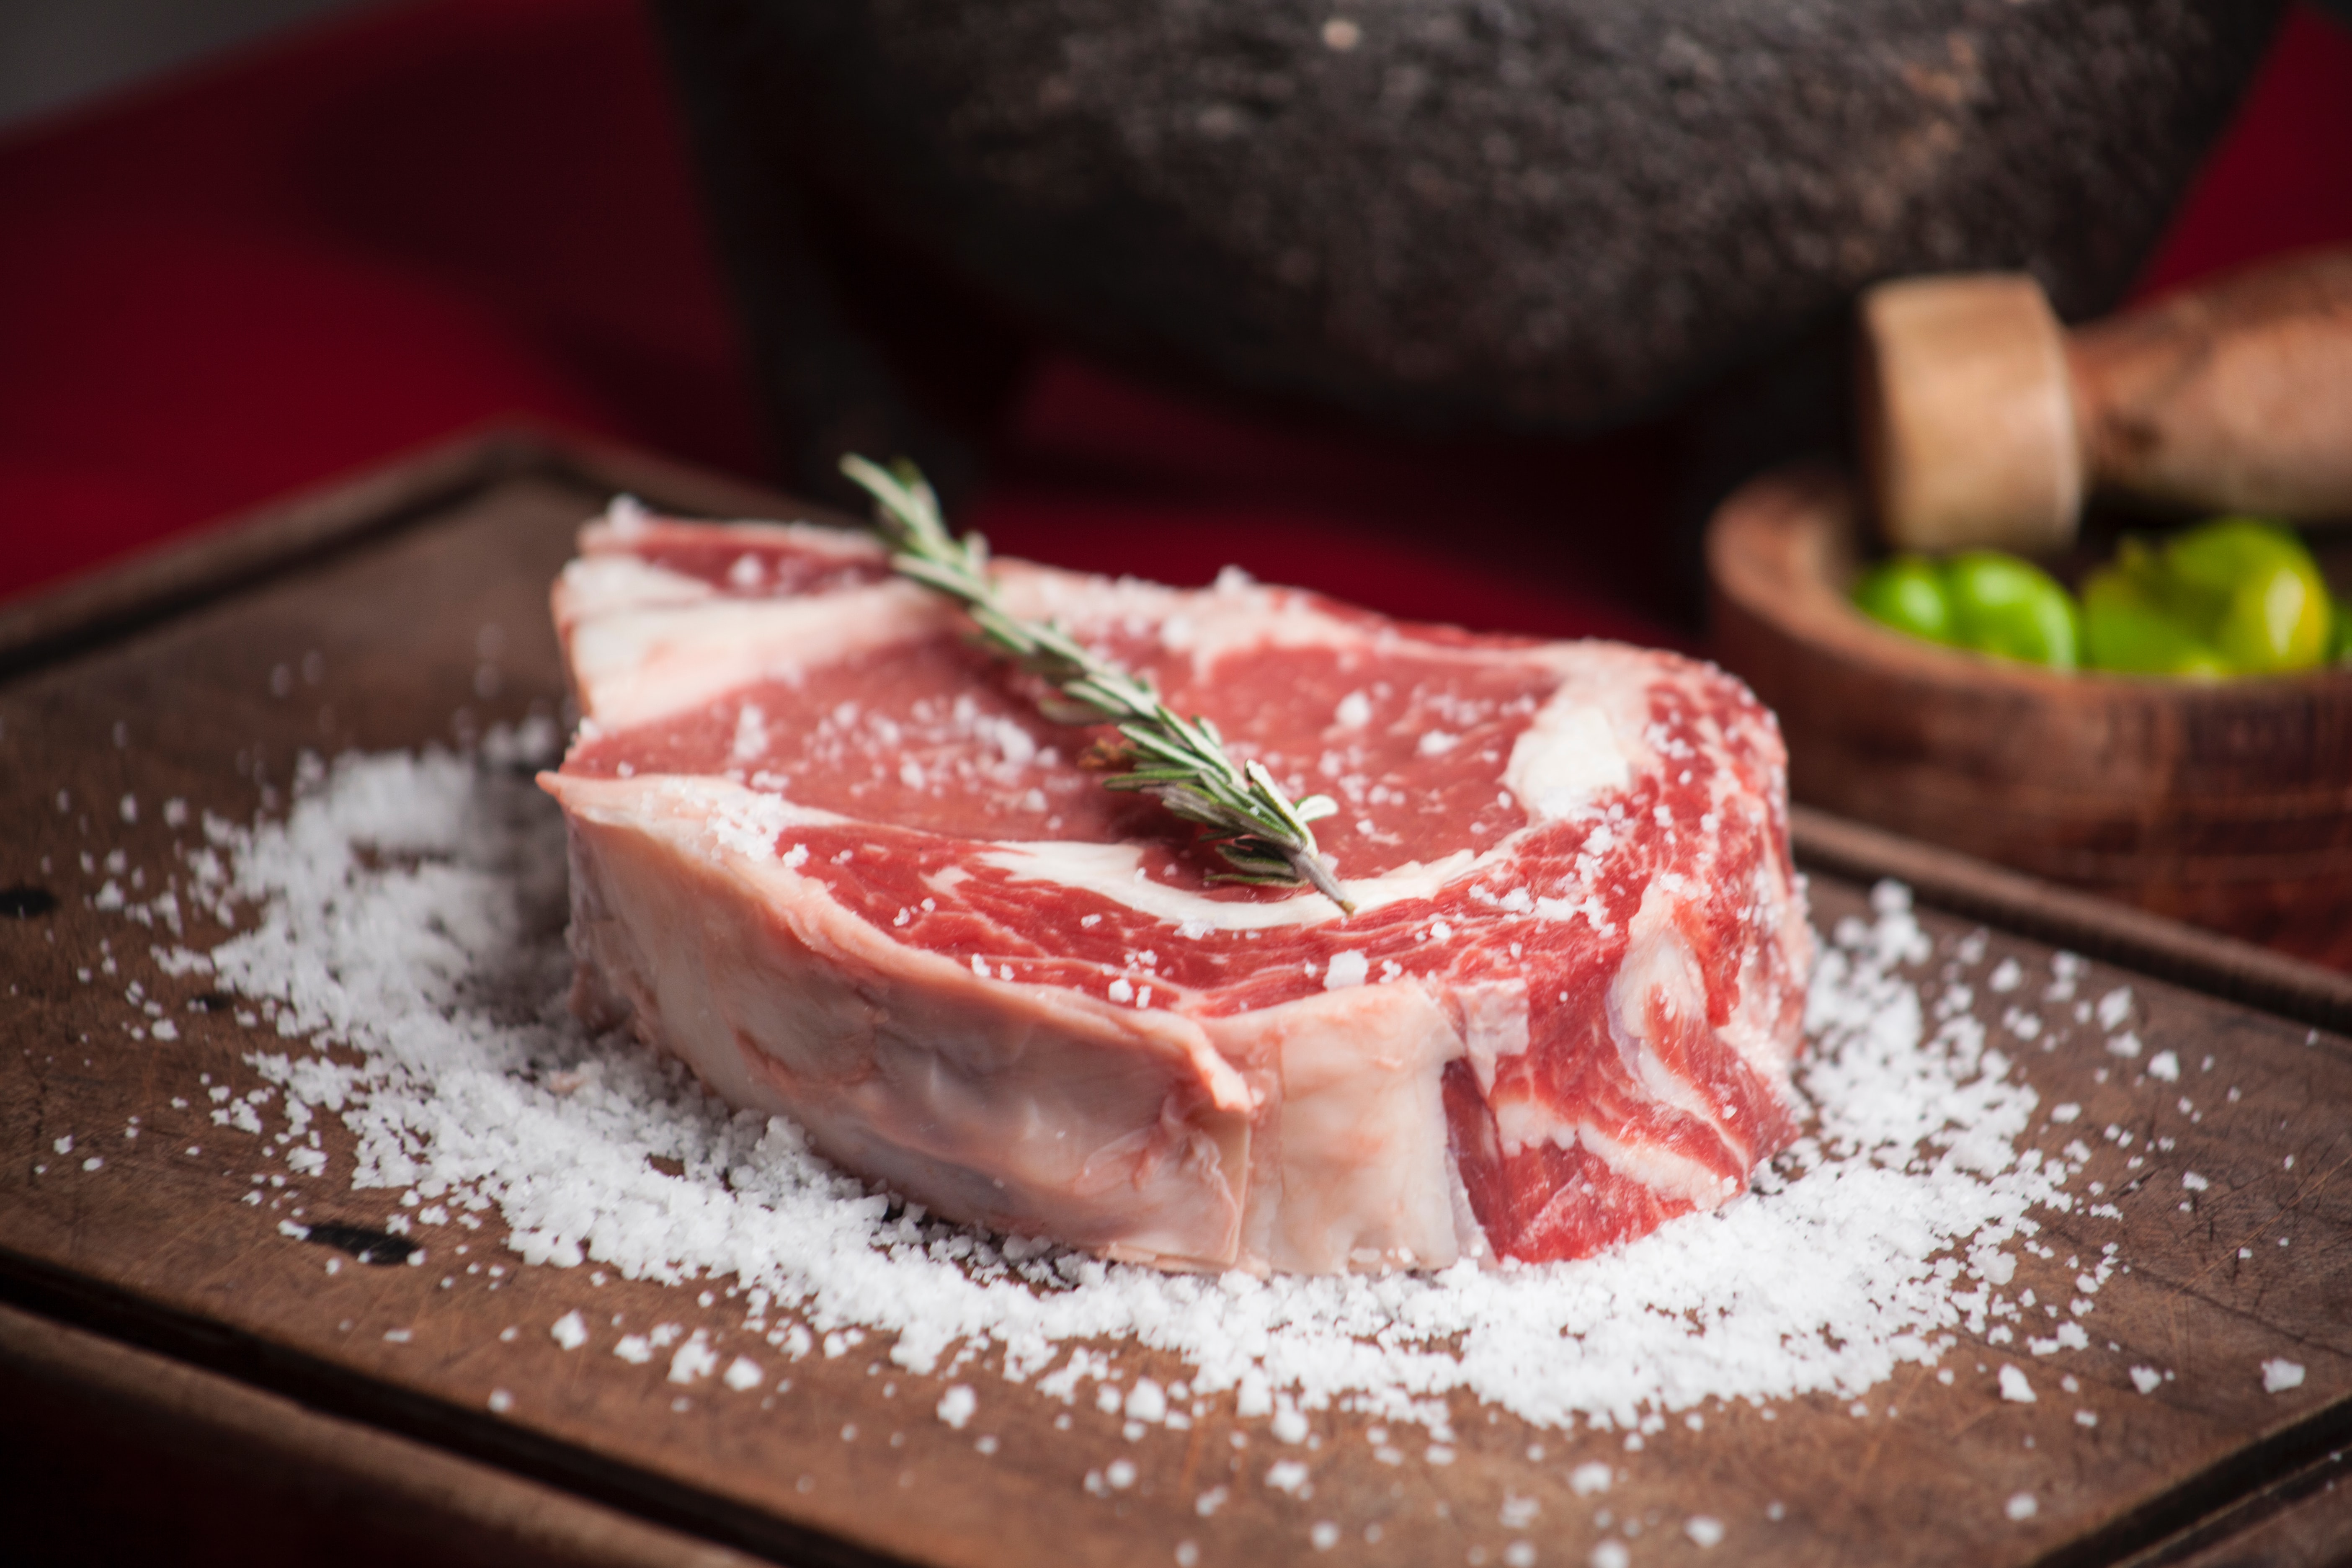 Red meat: Steak being prepared